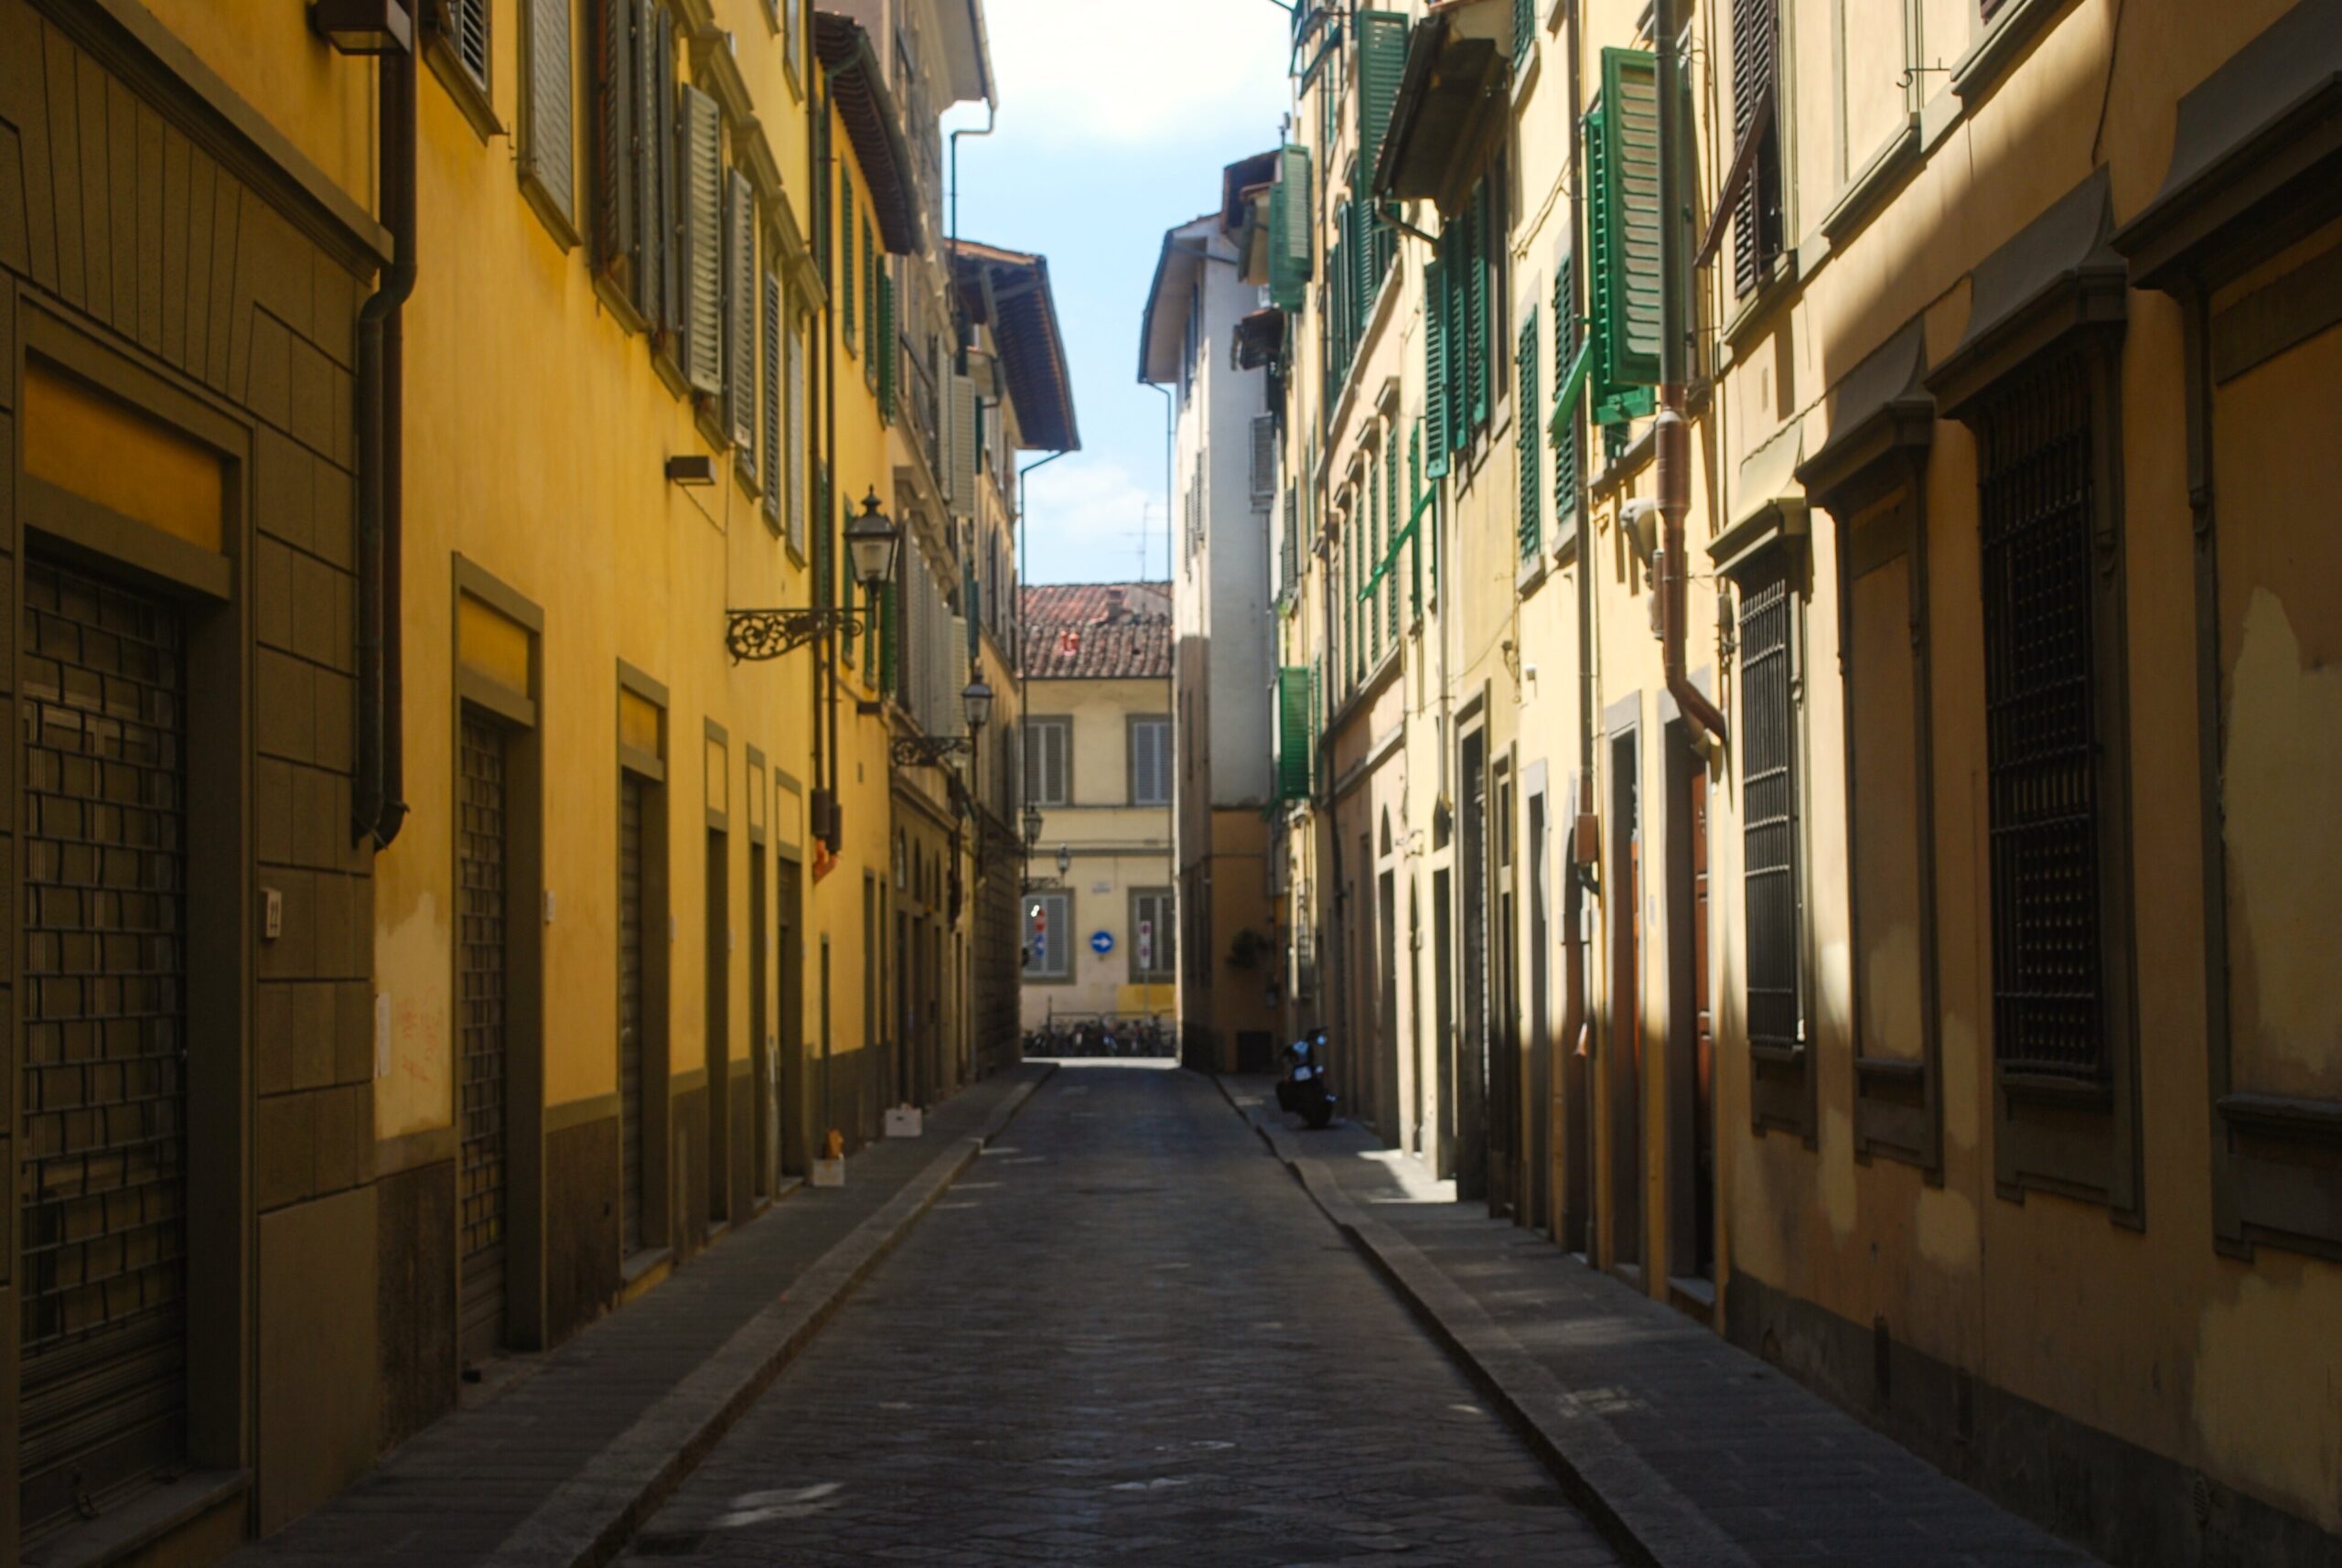 wąska uliczka w stolicy włoskiego Renesansu - Florencji